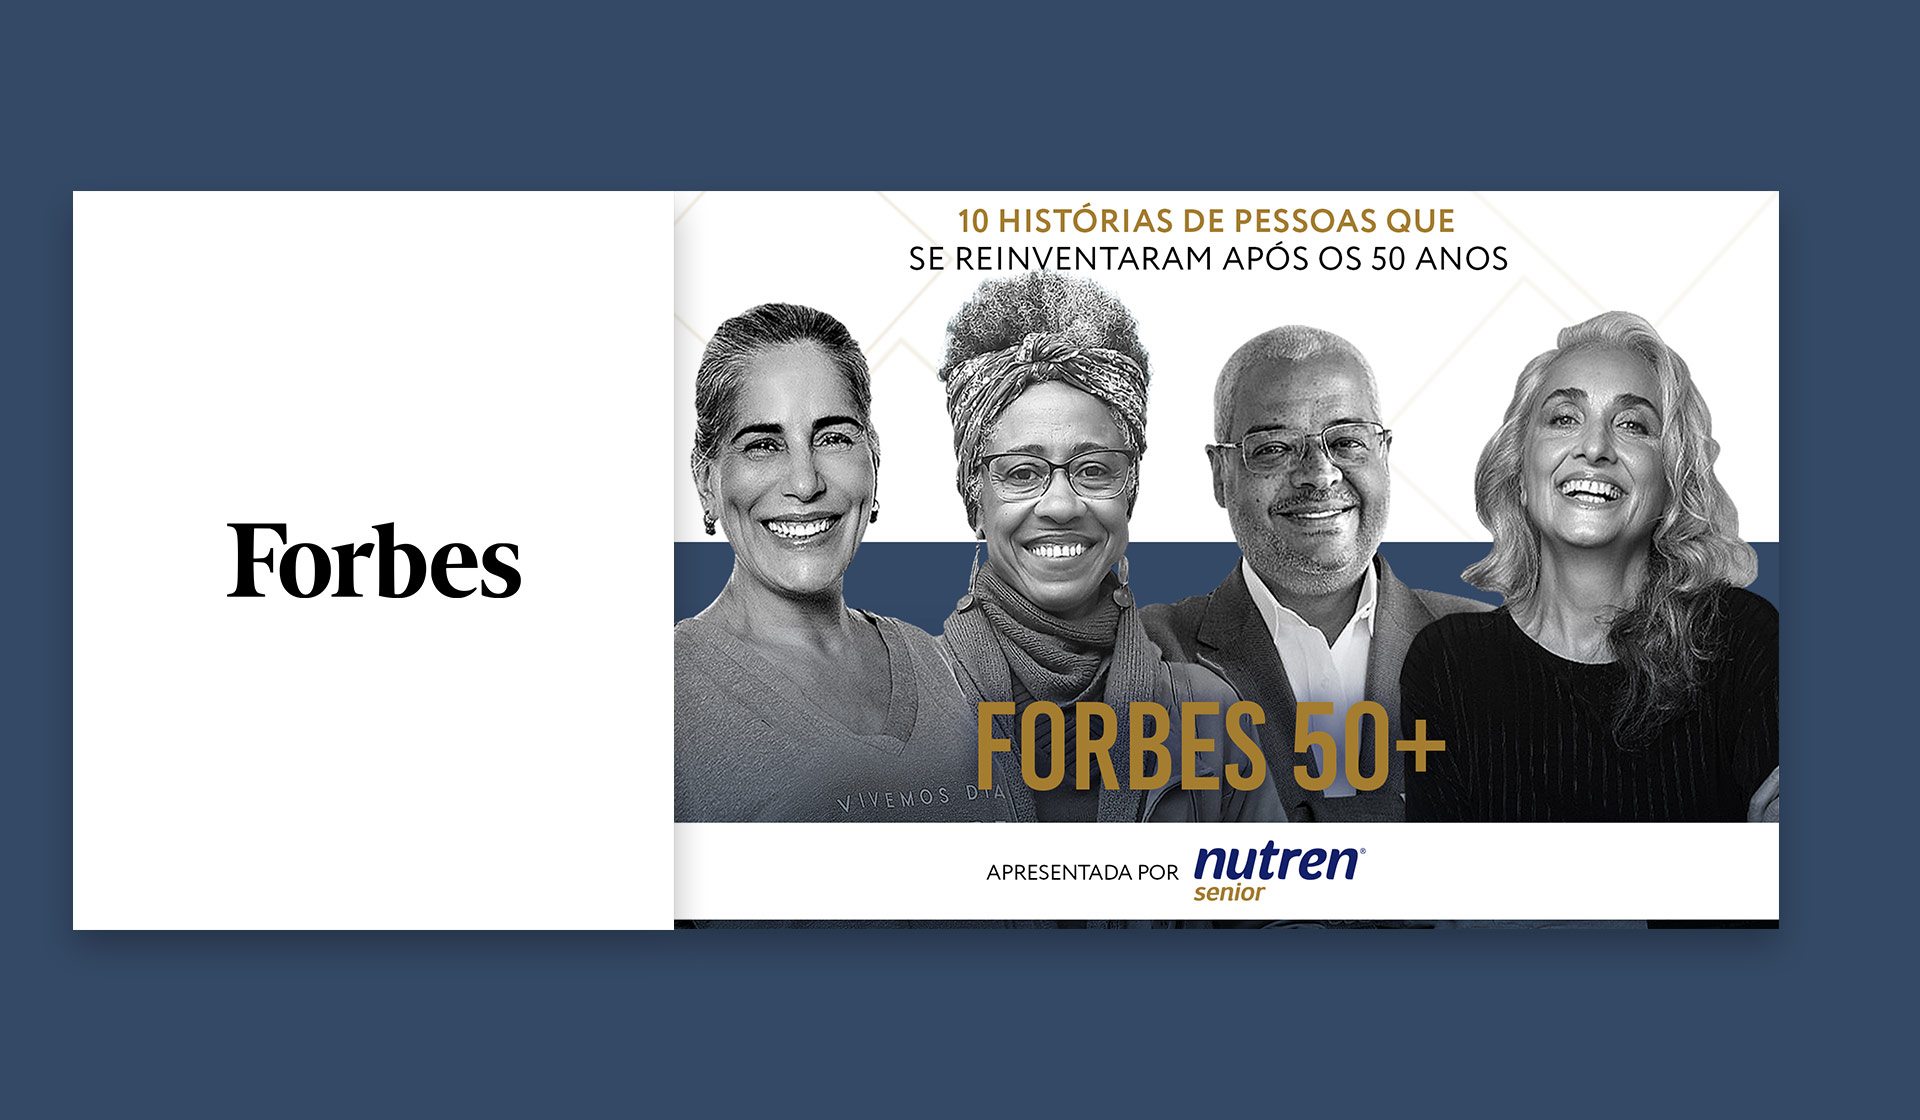 Imagem - Forbes 50+ destaca 10 histórias de reinvenção e sucesso a partir dos 50 anos